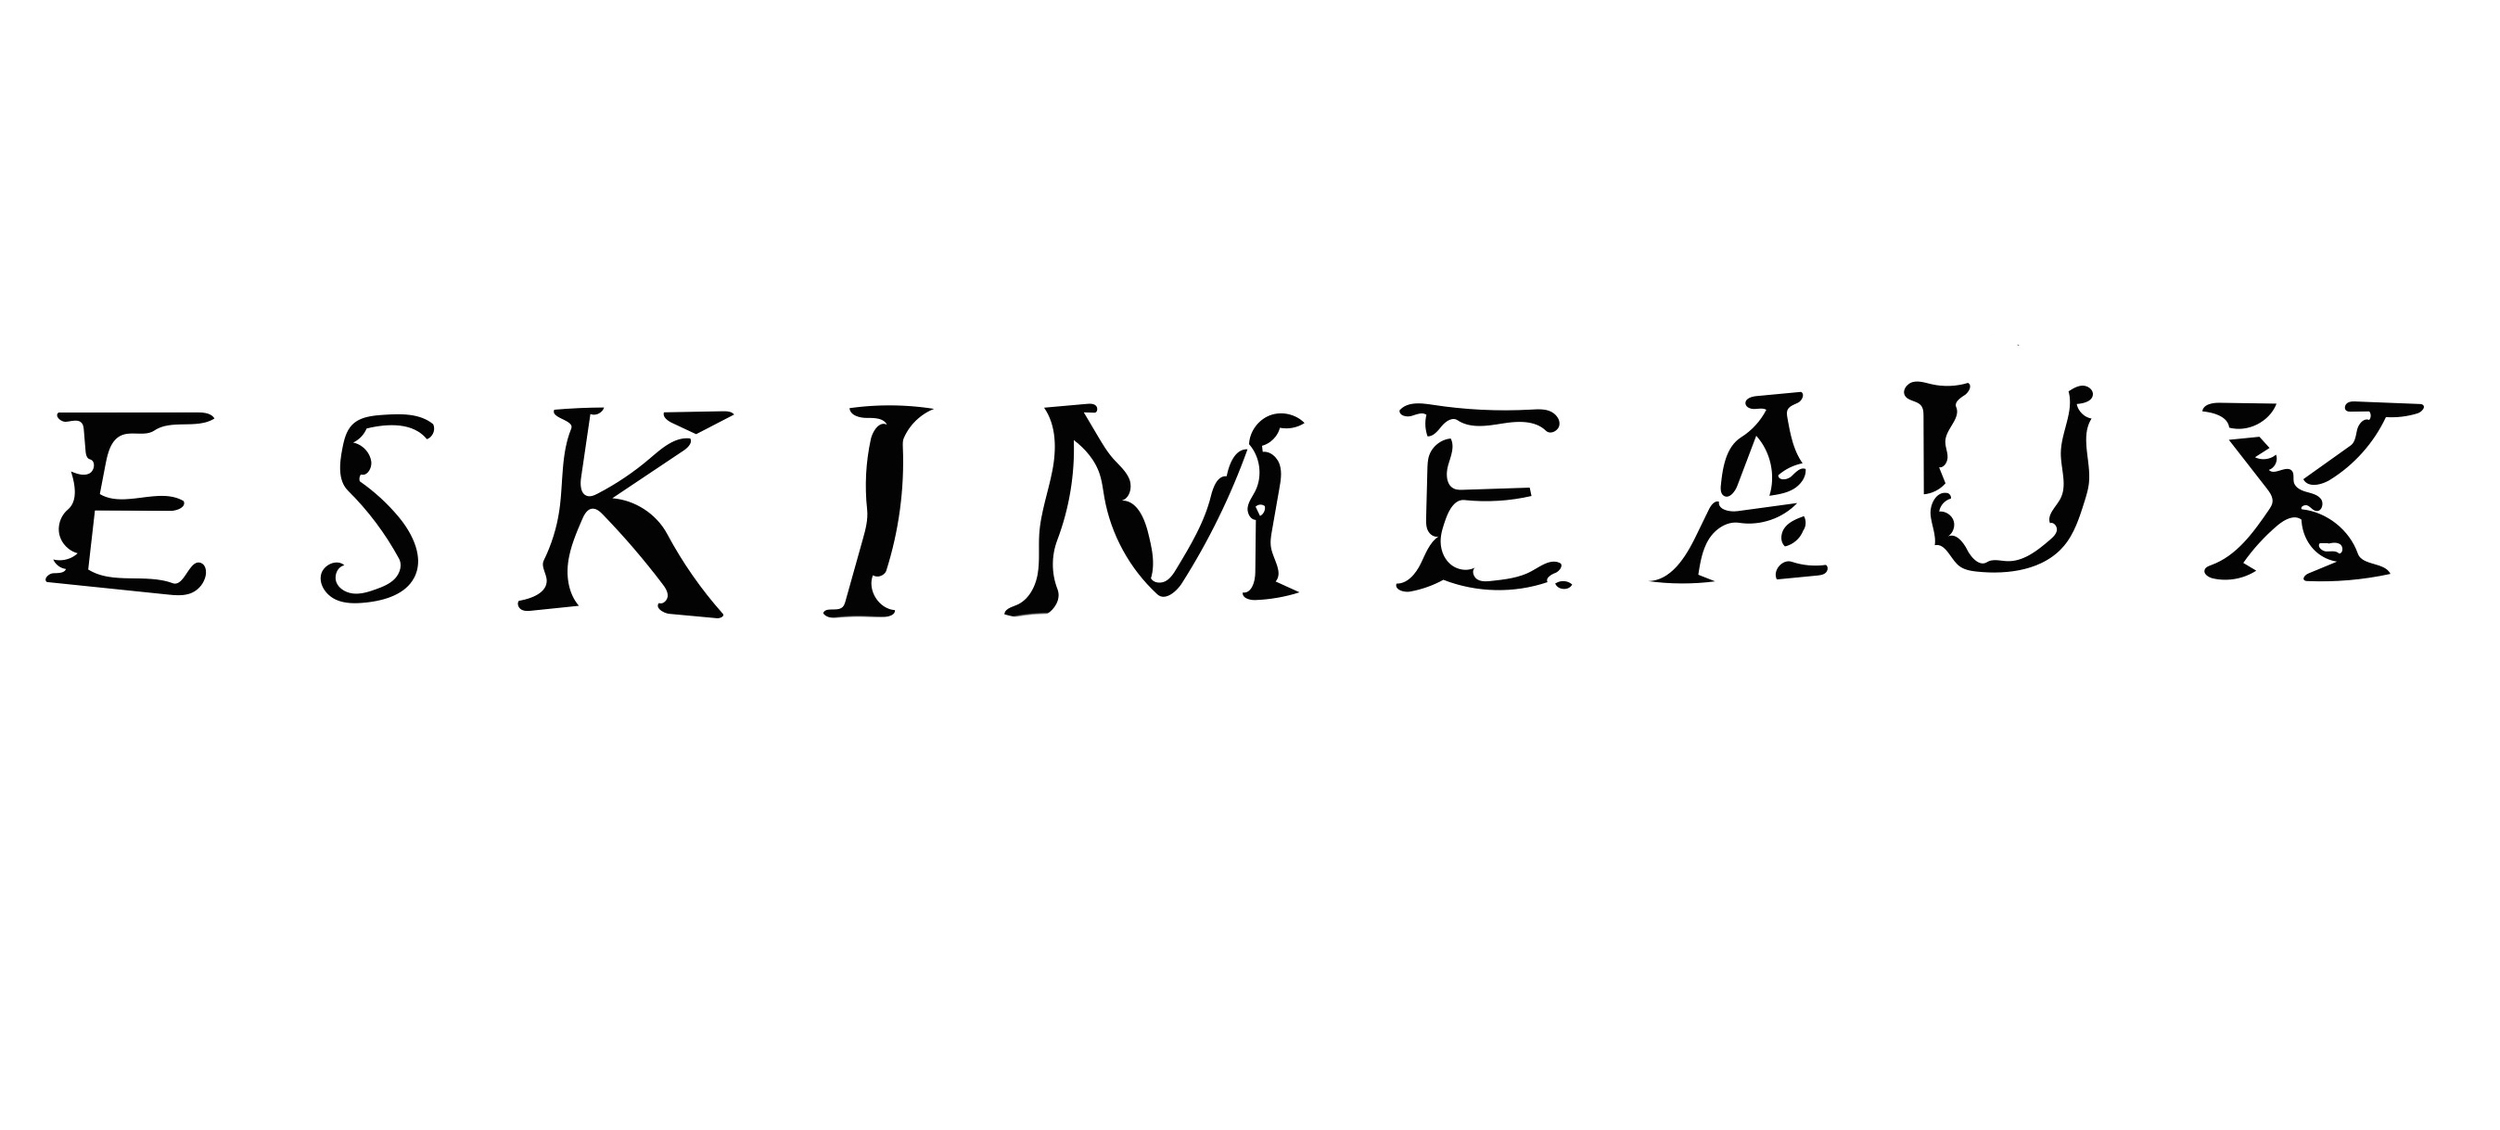 eskimeaux logo.jpg